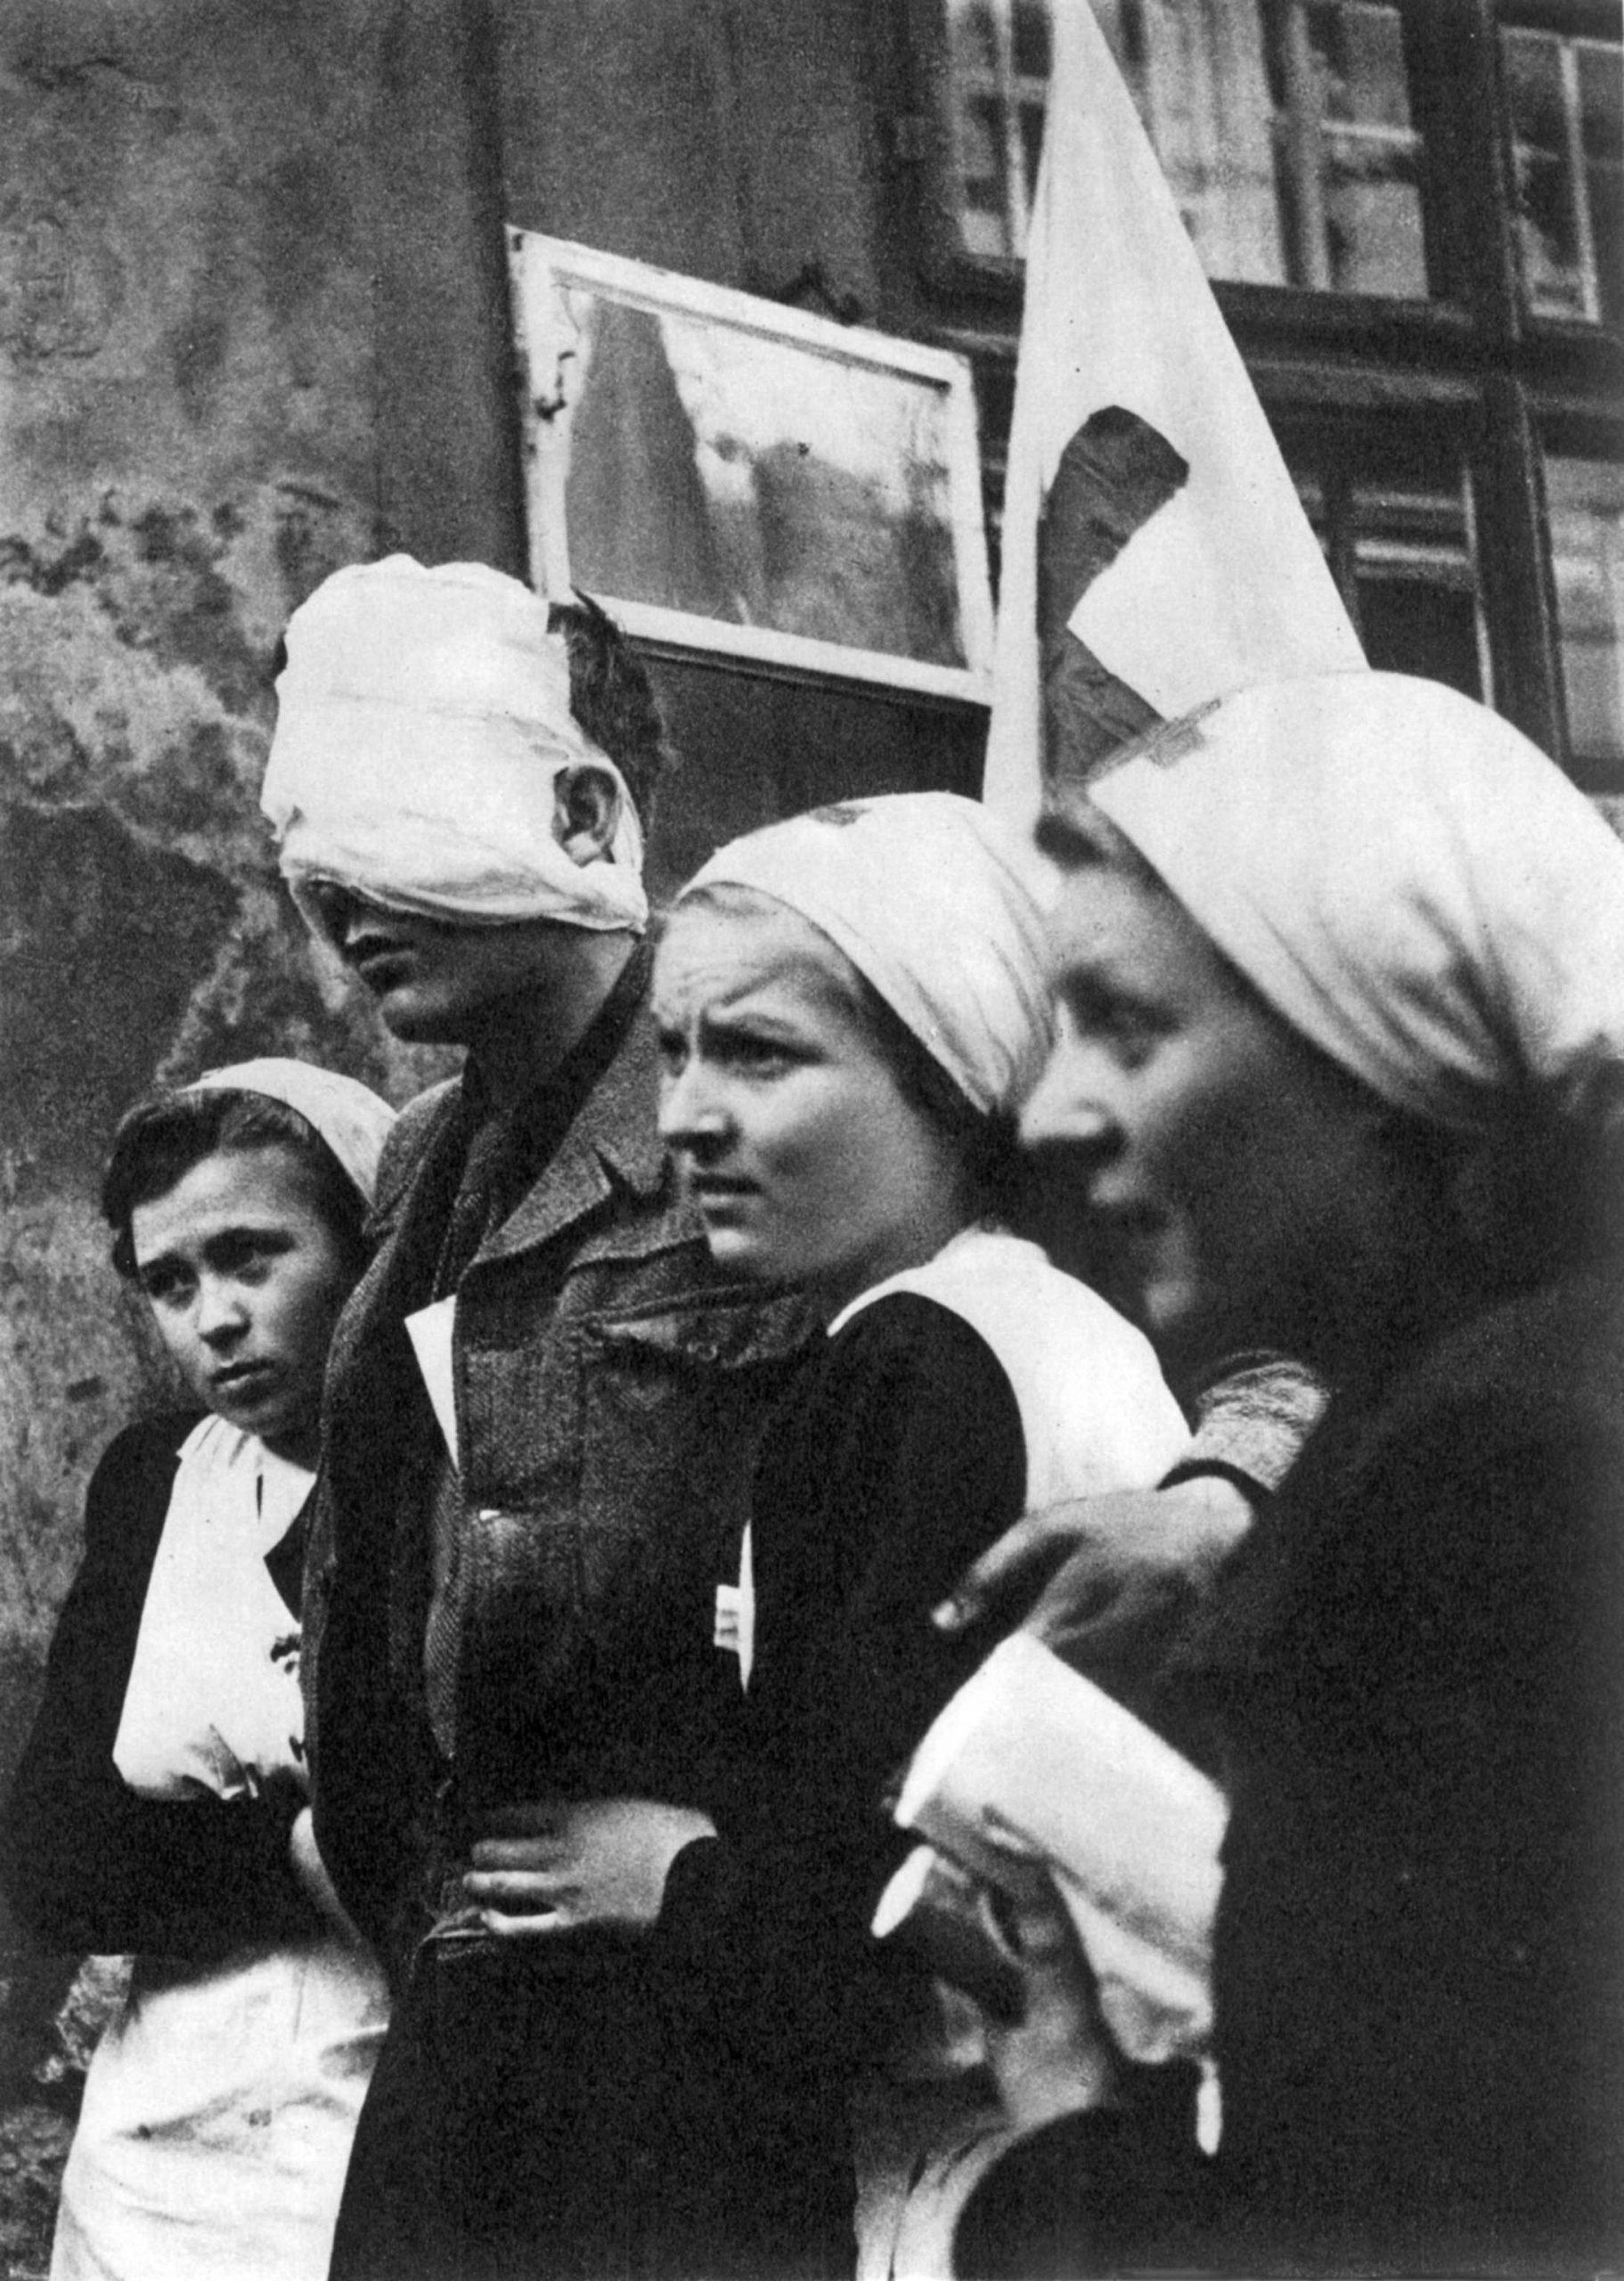 Czechoslovak nurses